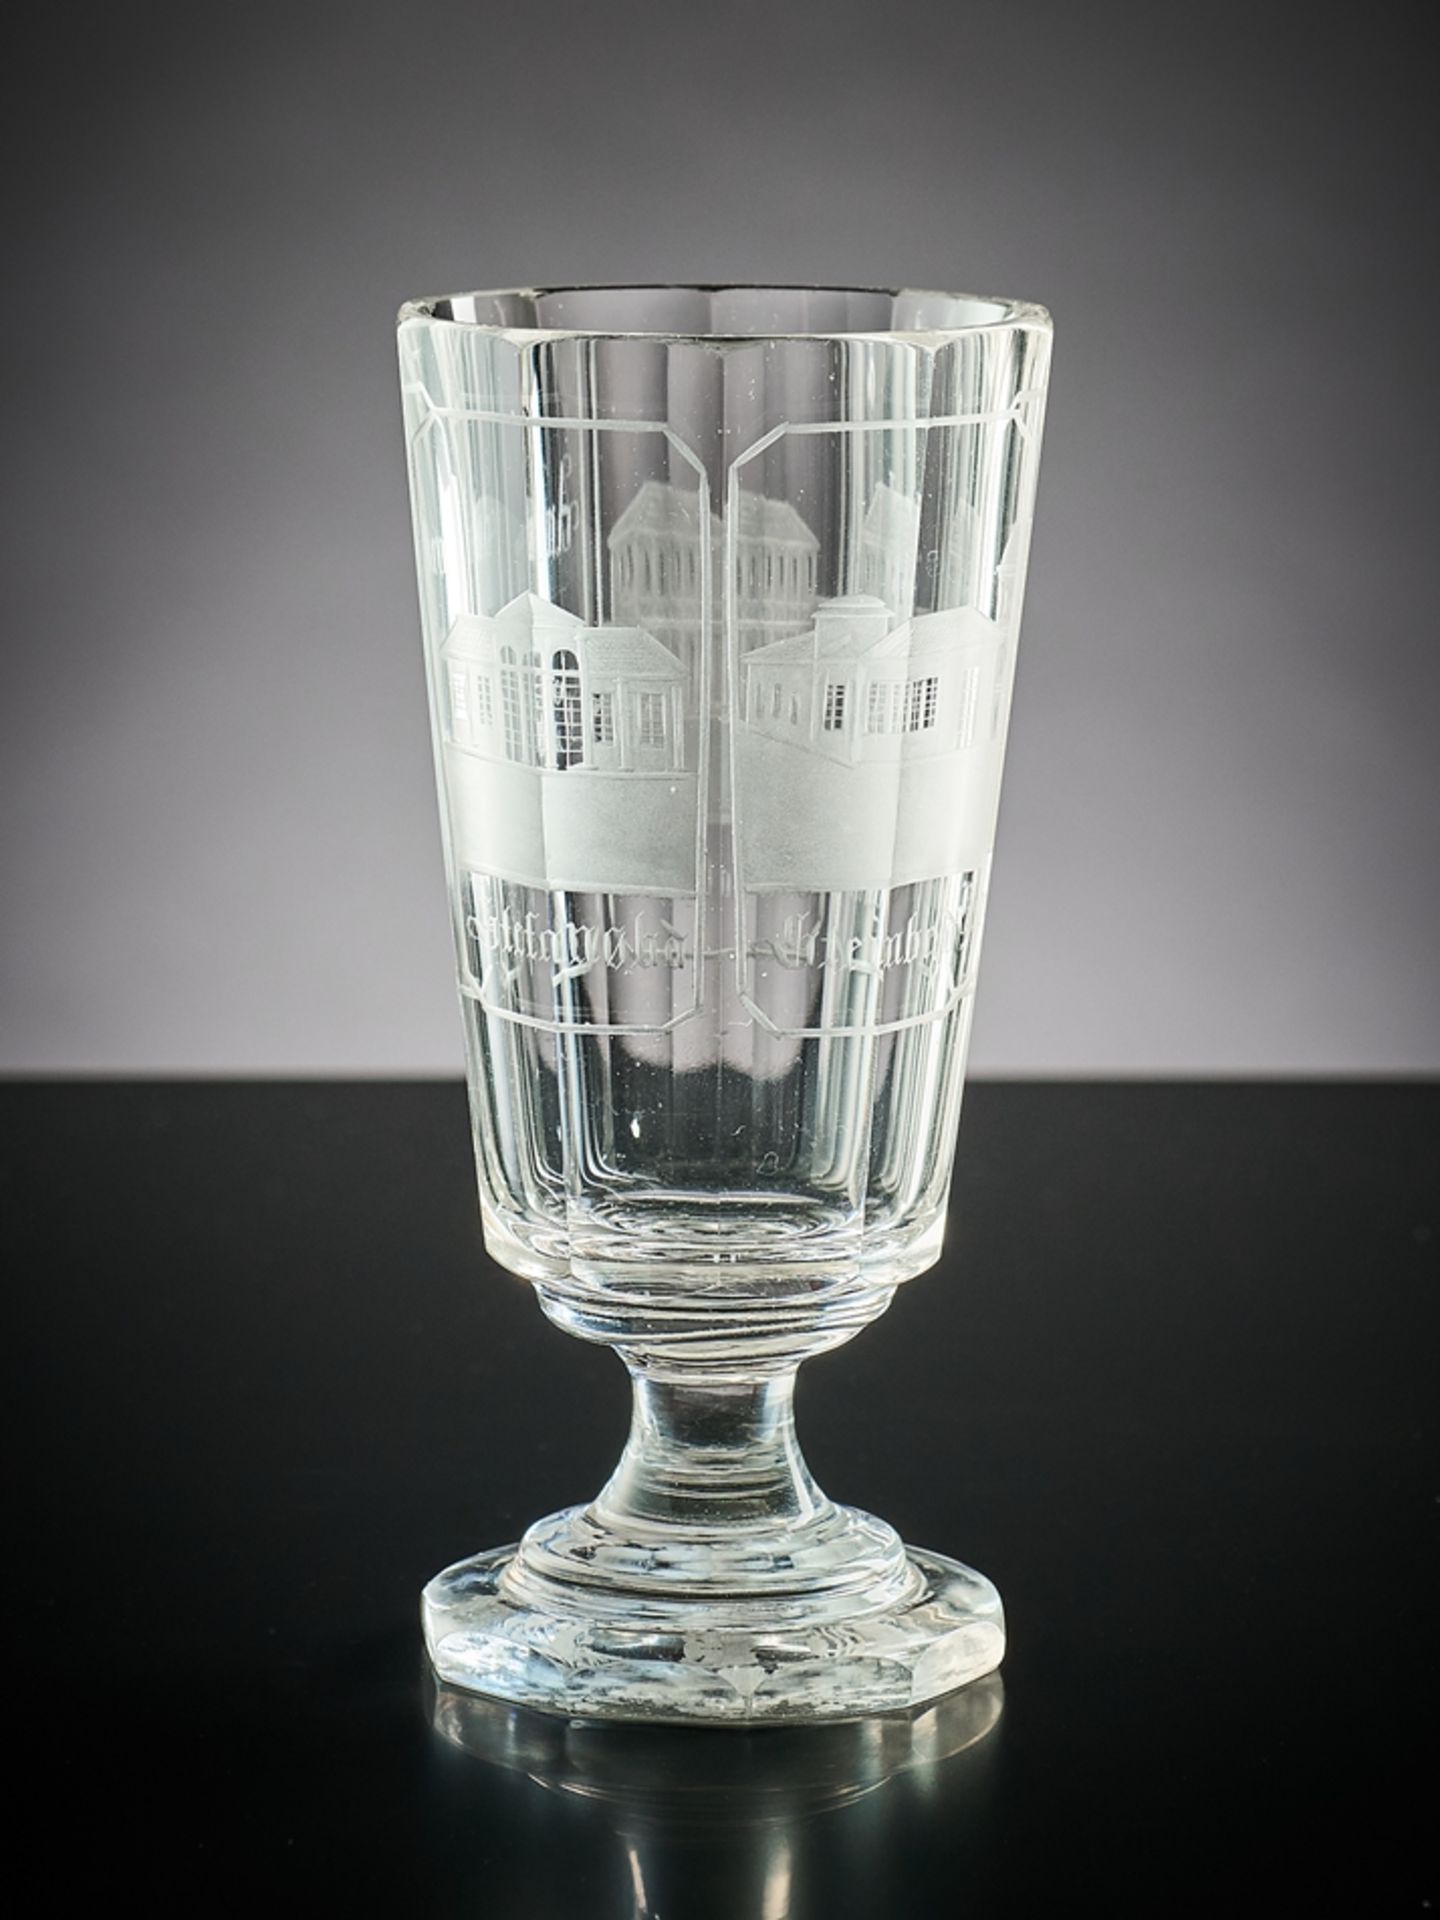 Teplitzer Badeglas. Farbloses Glas mit verschiedenen Ansichten von Teplitz. Böhmen, 19. Jh. H 14,5 - Image 2 of 2